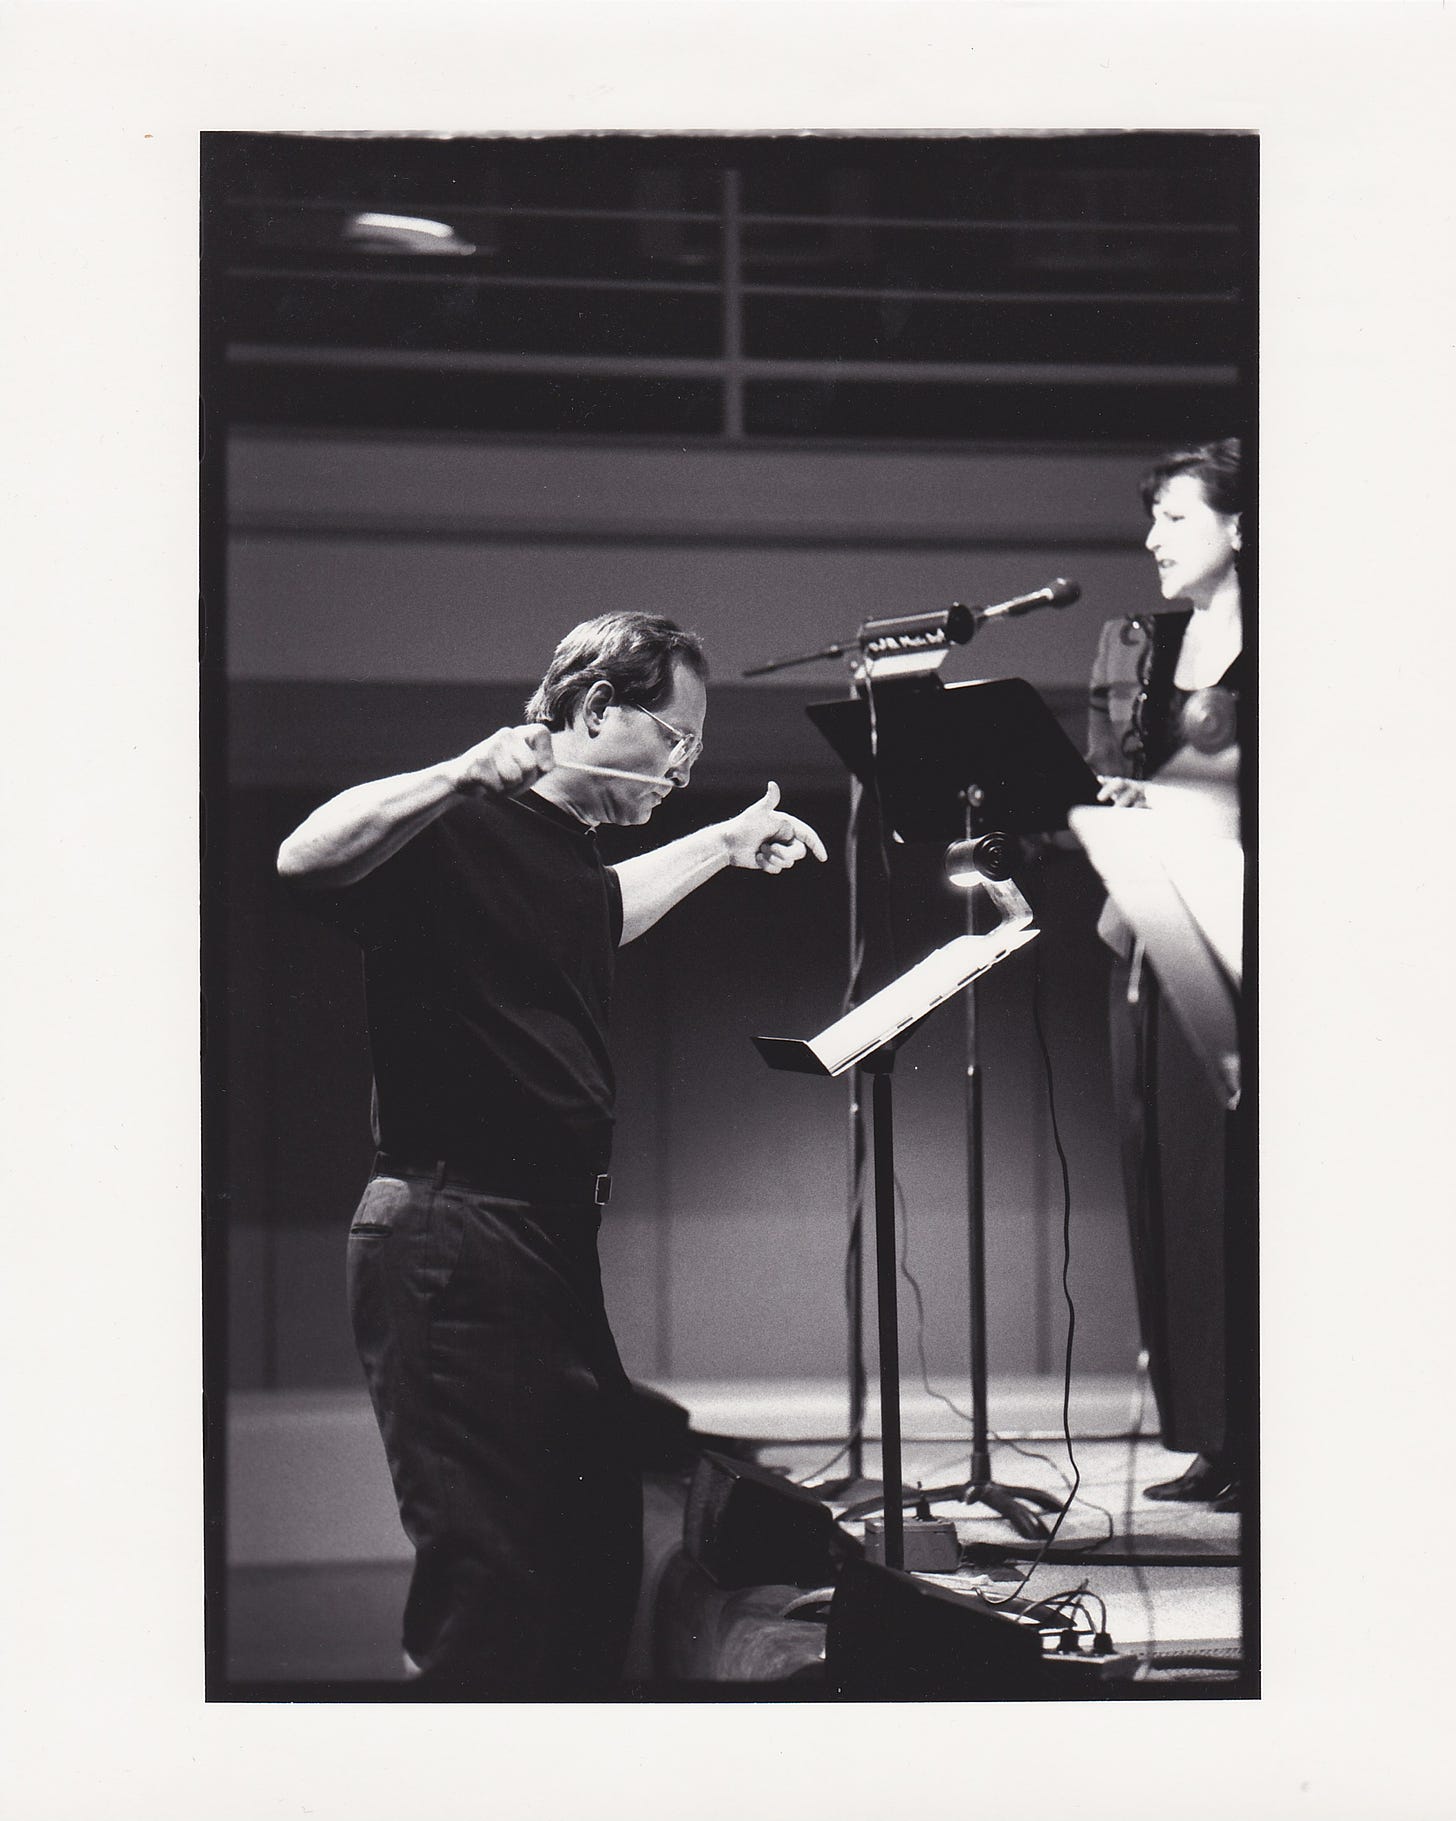 Jan Krzywicki conducting with soprano Jody Kidwell in background